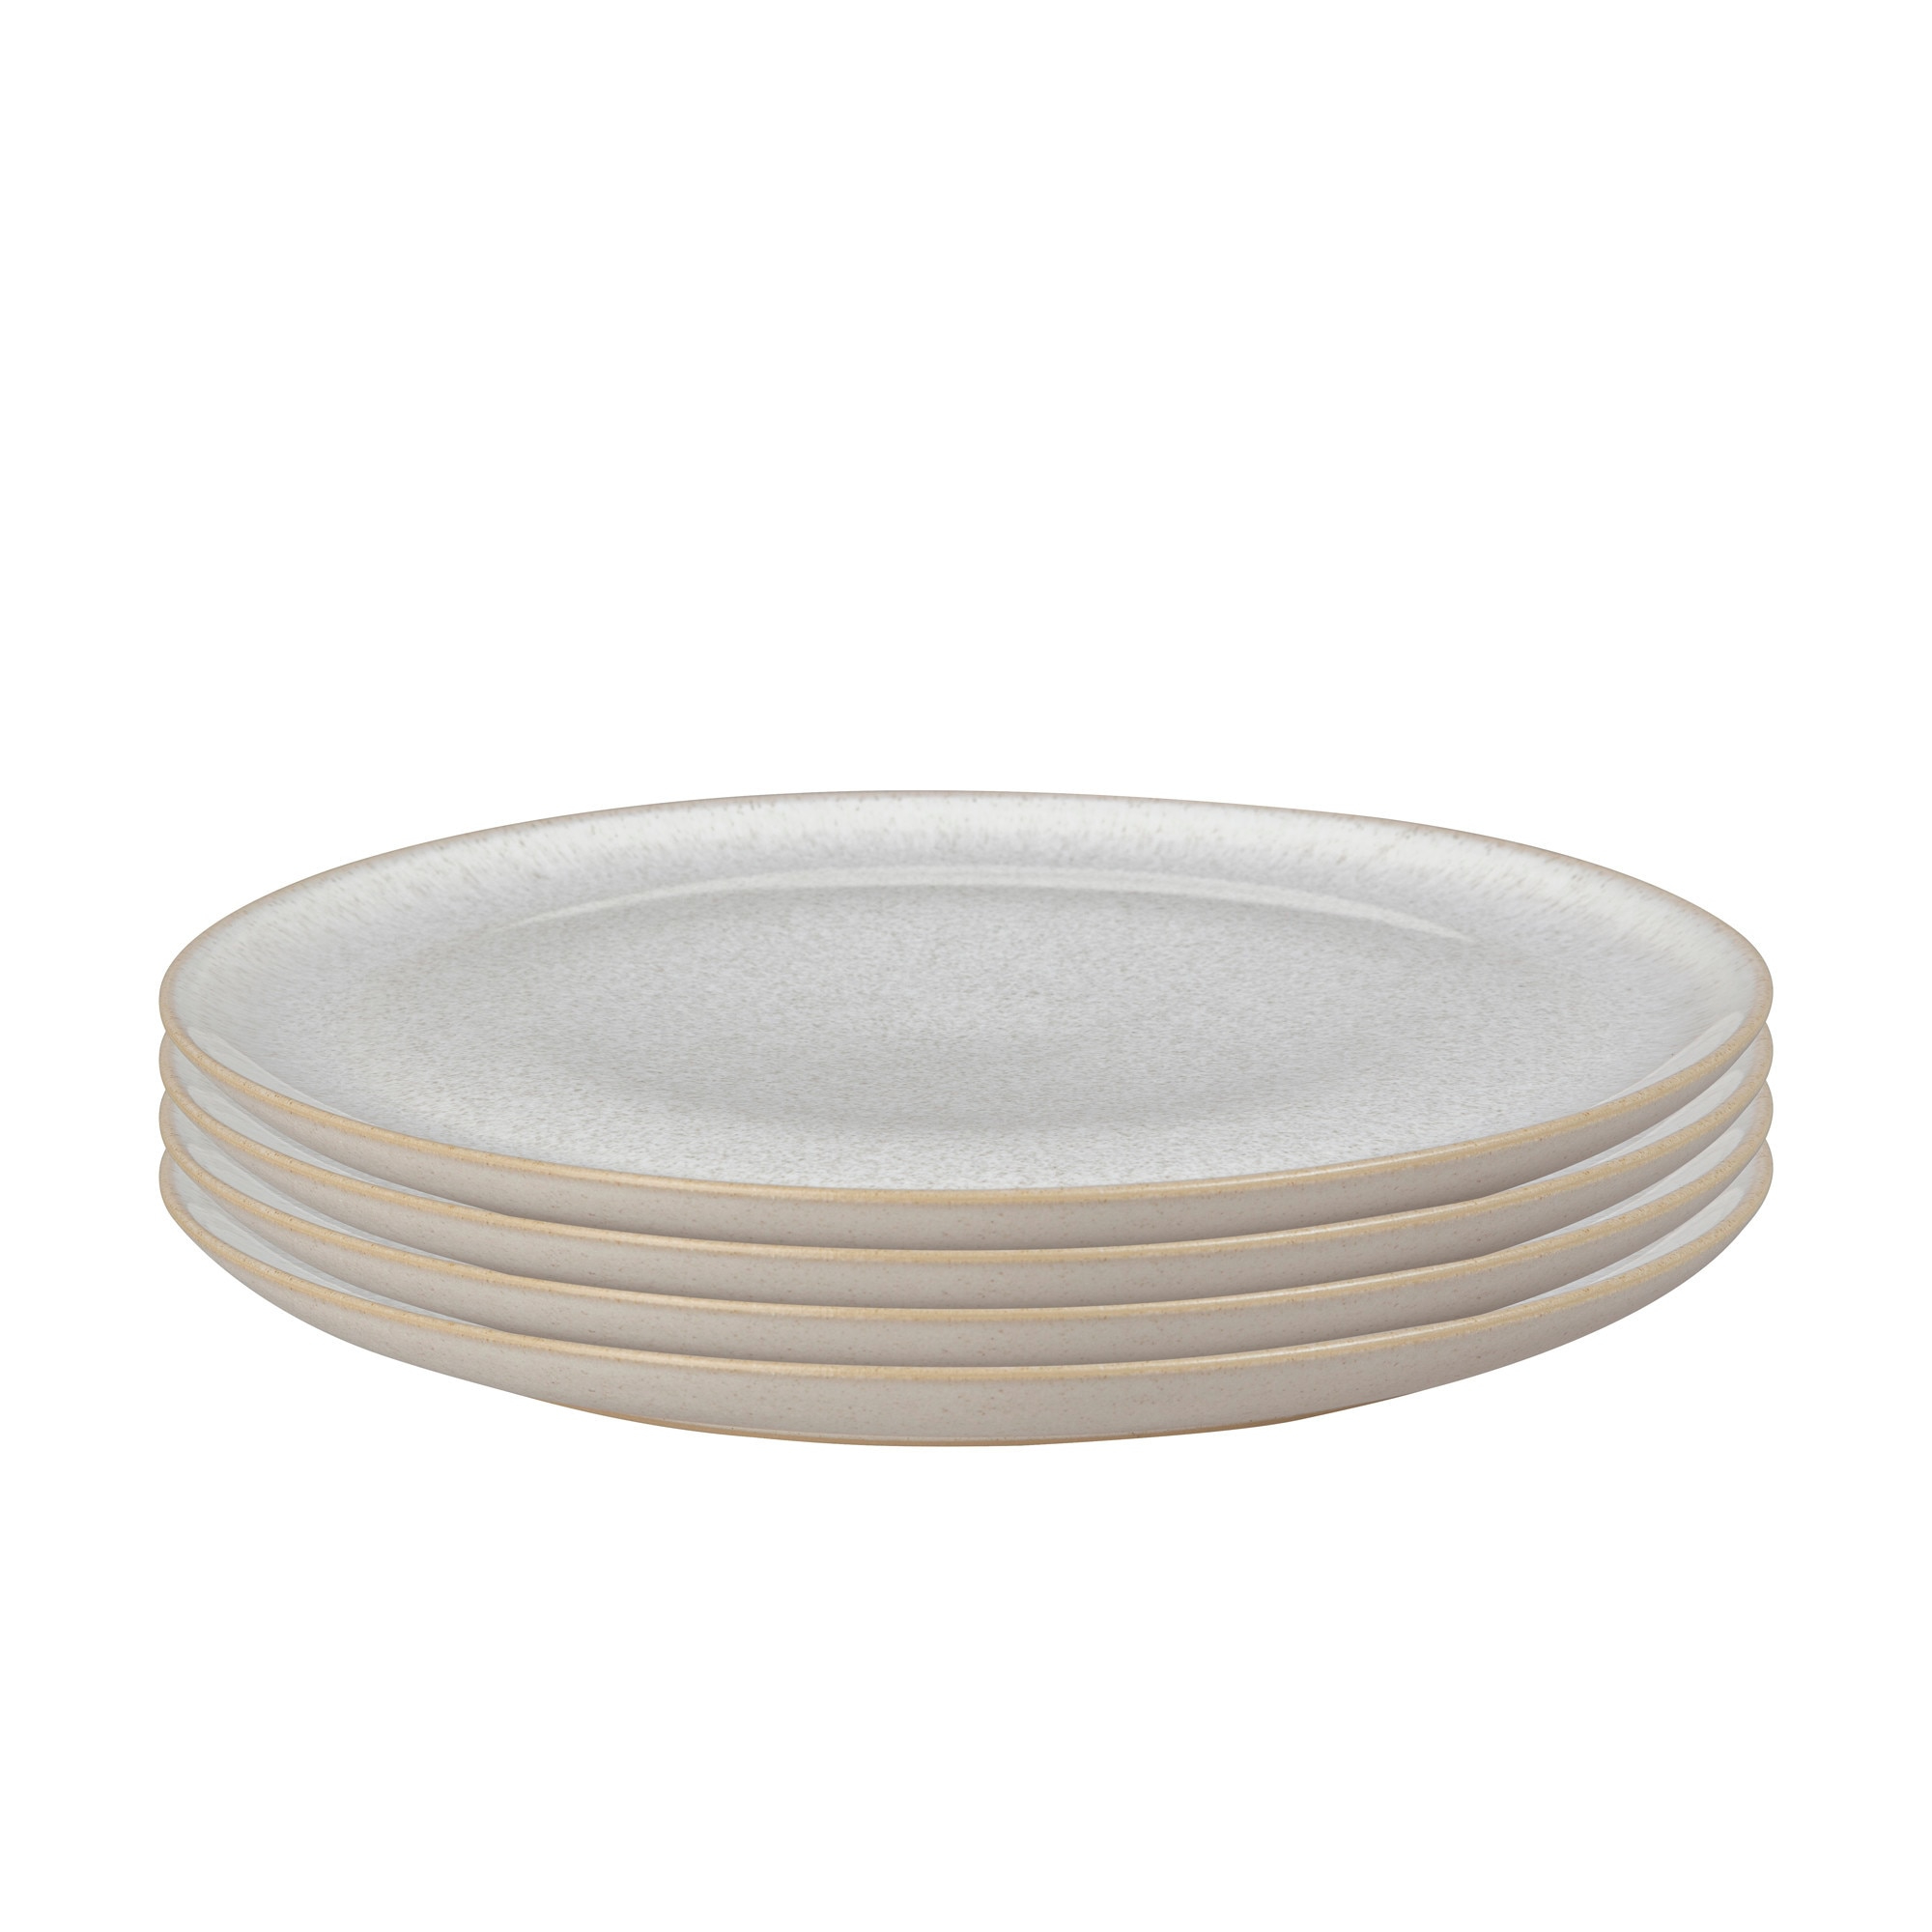 Набор тарелок Denby Modus Speckle 17,5 см 4 шт набор для соли и перца 7 см керамика молочный в крапинку полевые ы meadow speckled